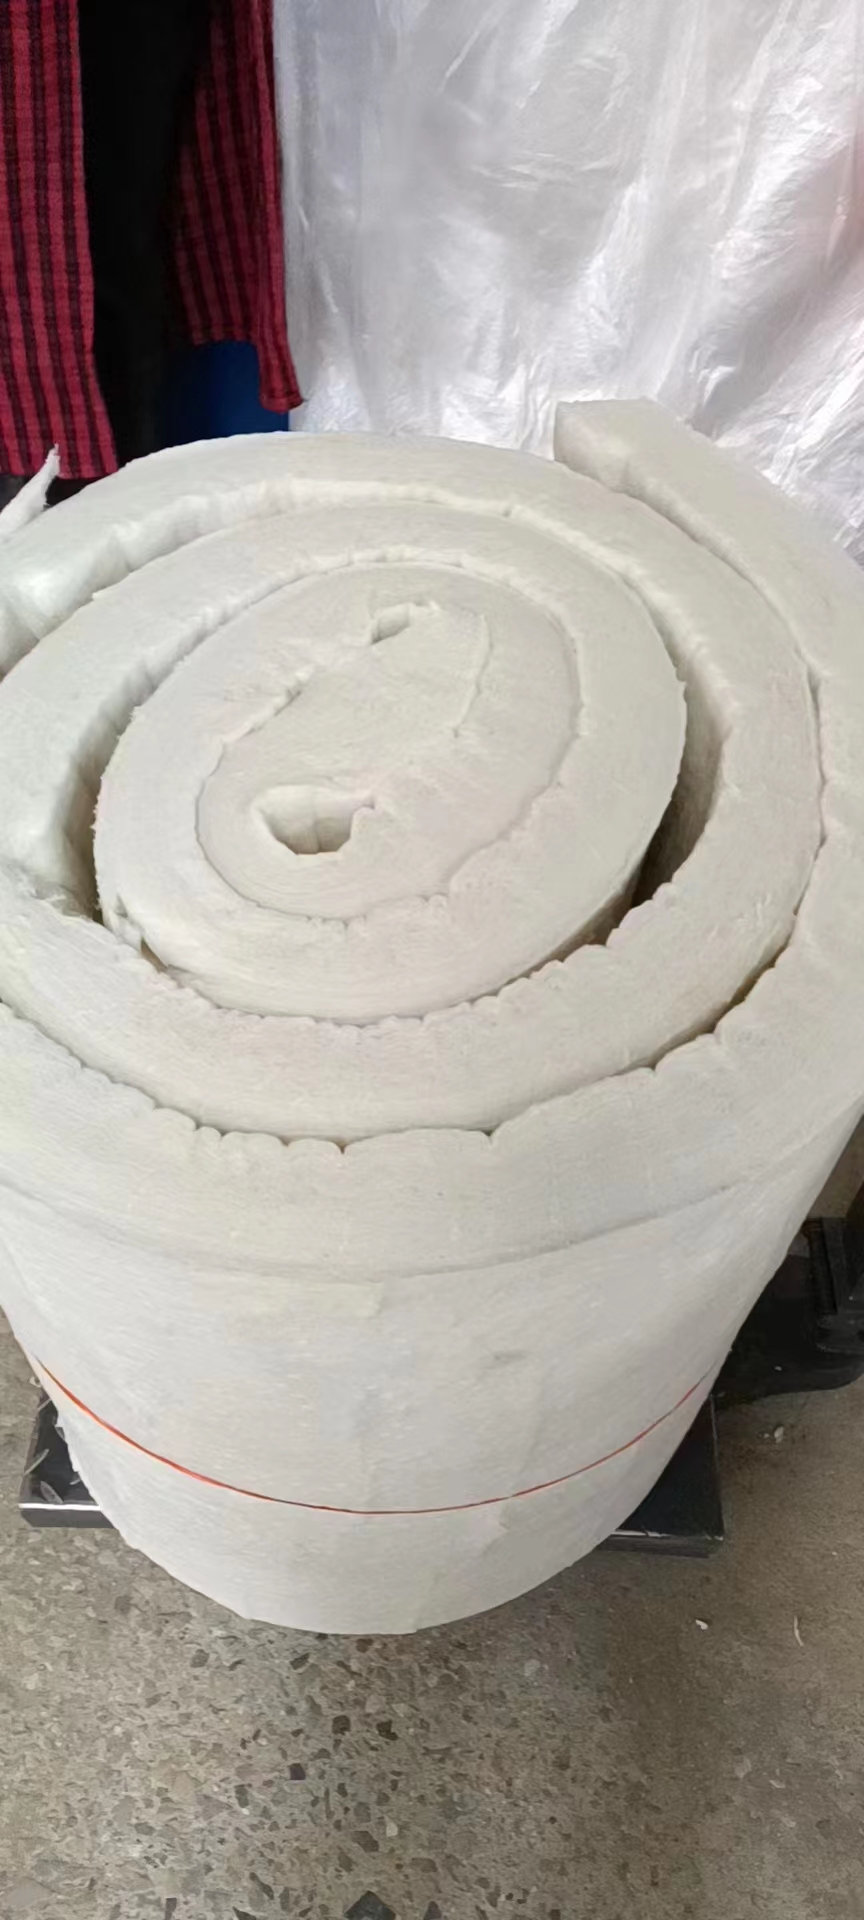 雅驰 硅酸铝隔热层异型加工保温棉柔性材料切割厂家可拆卸保温套